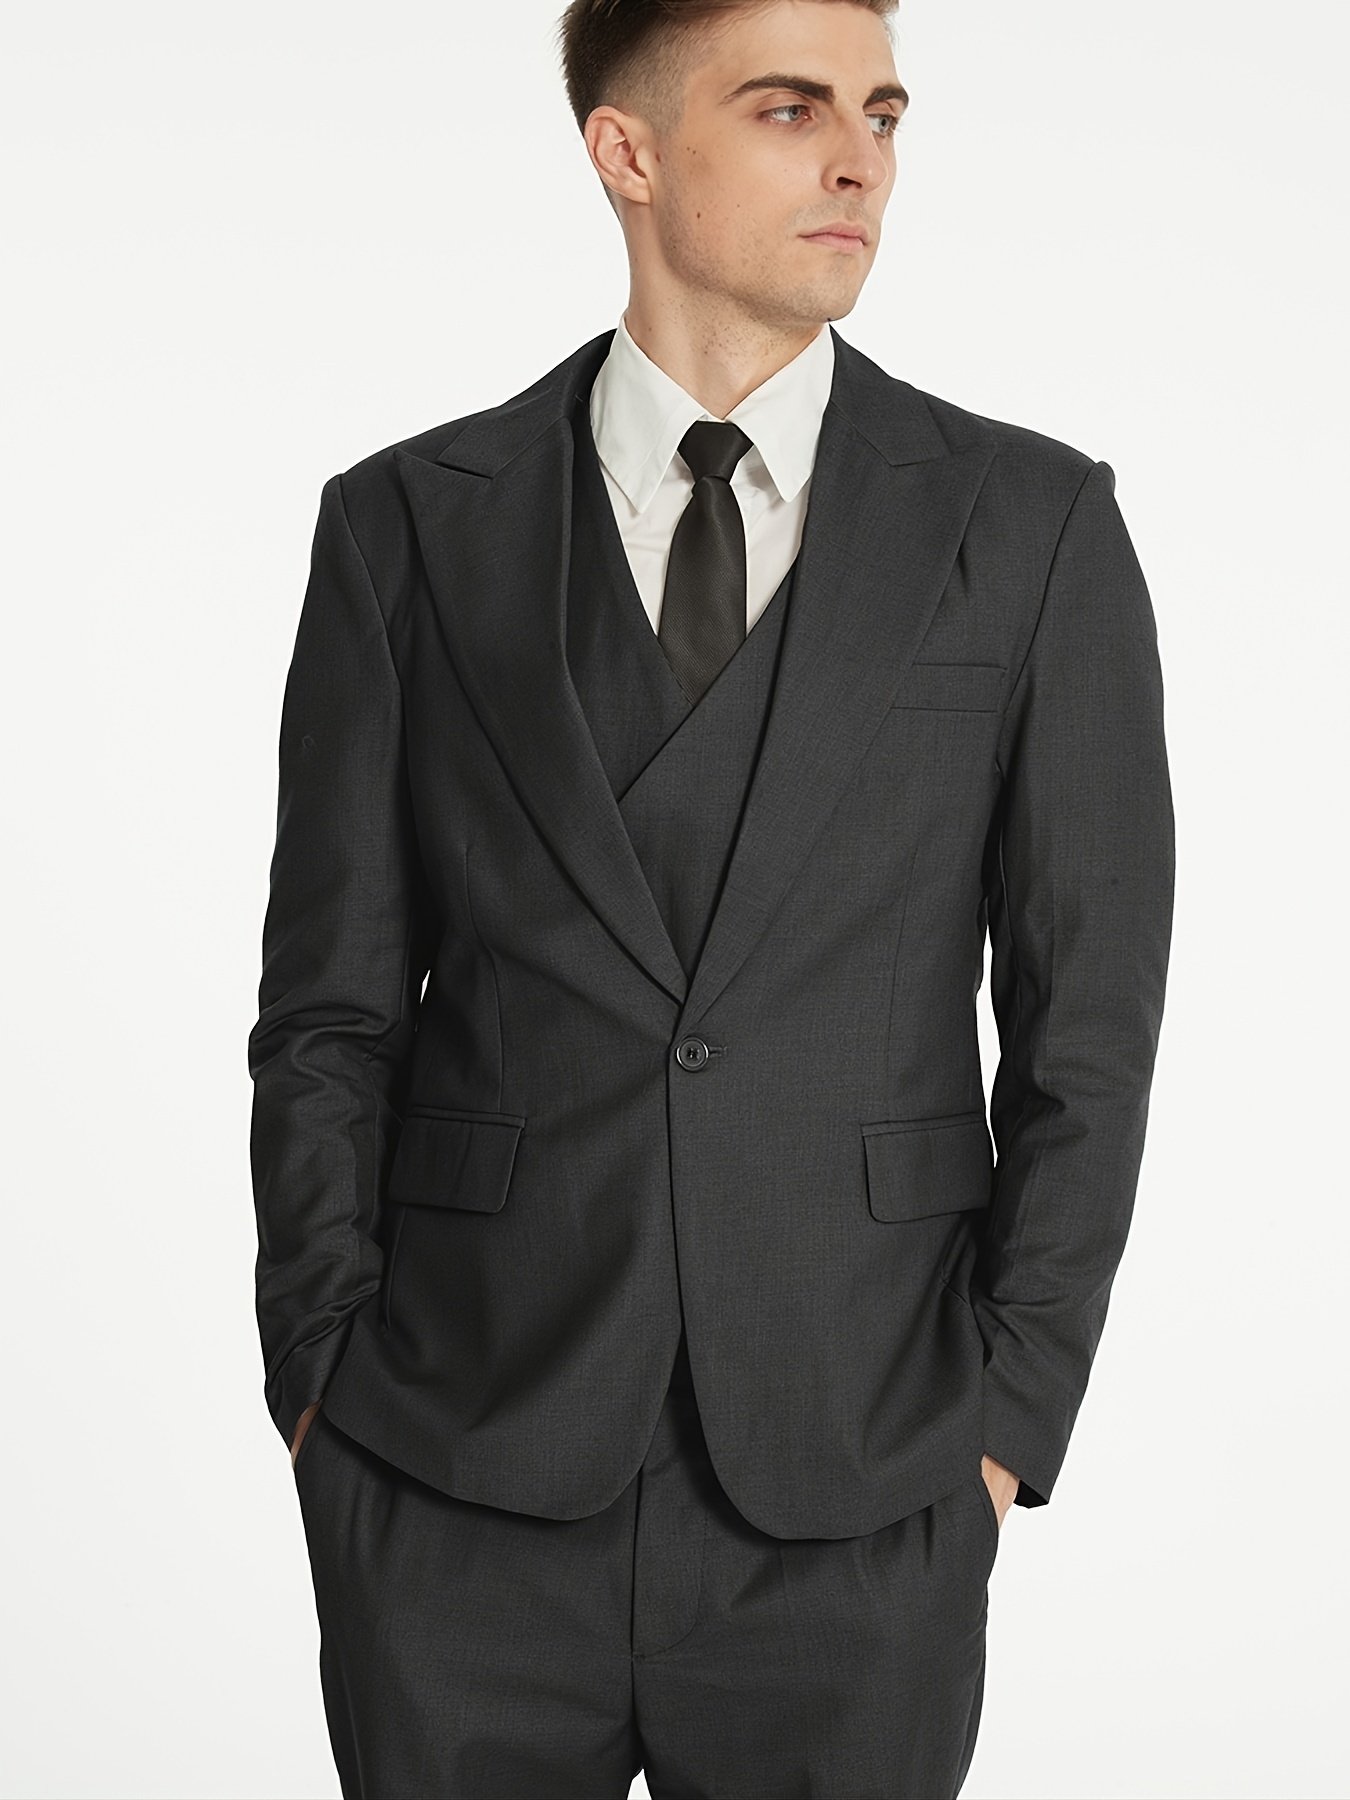 Men's 3 Pieces Suit Blazers Jacket Vest Pants Sets Slim Fit Formal